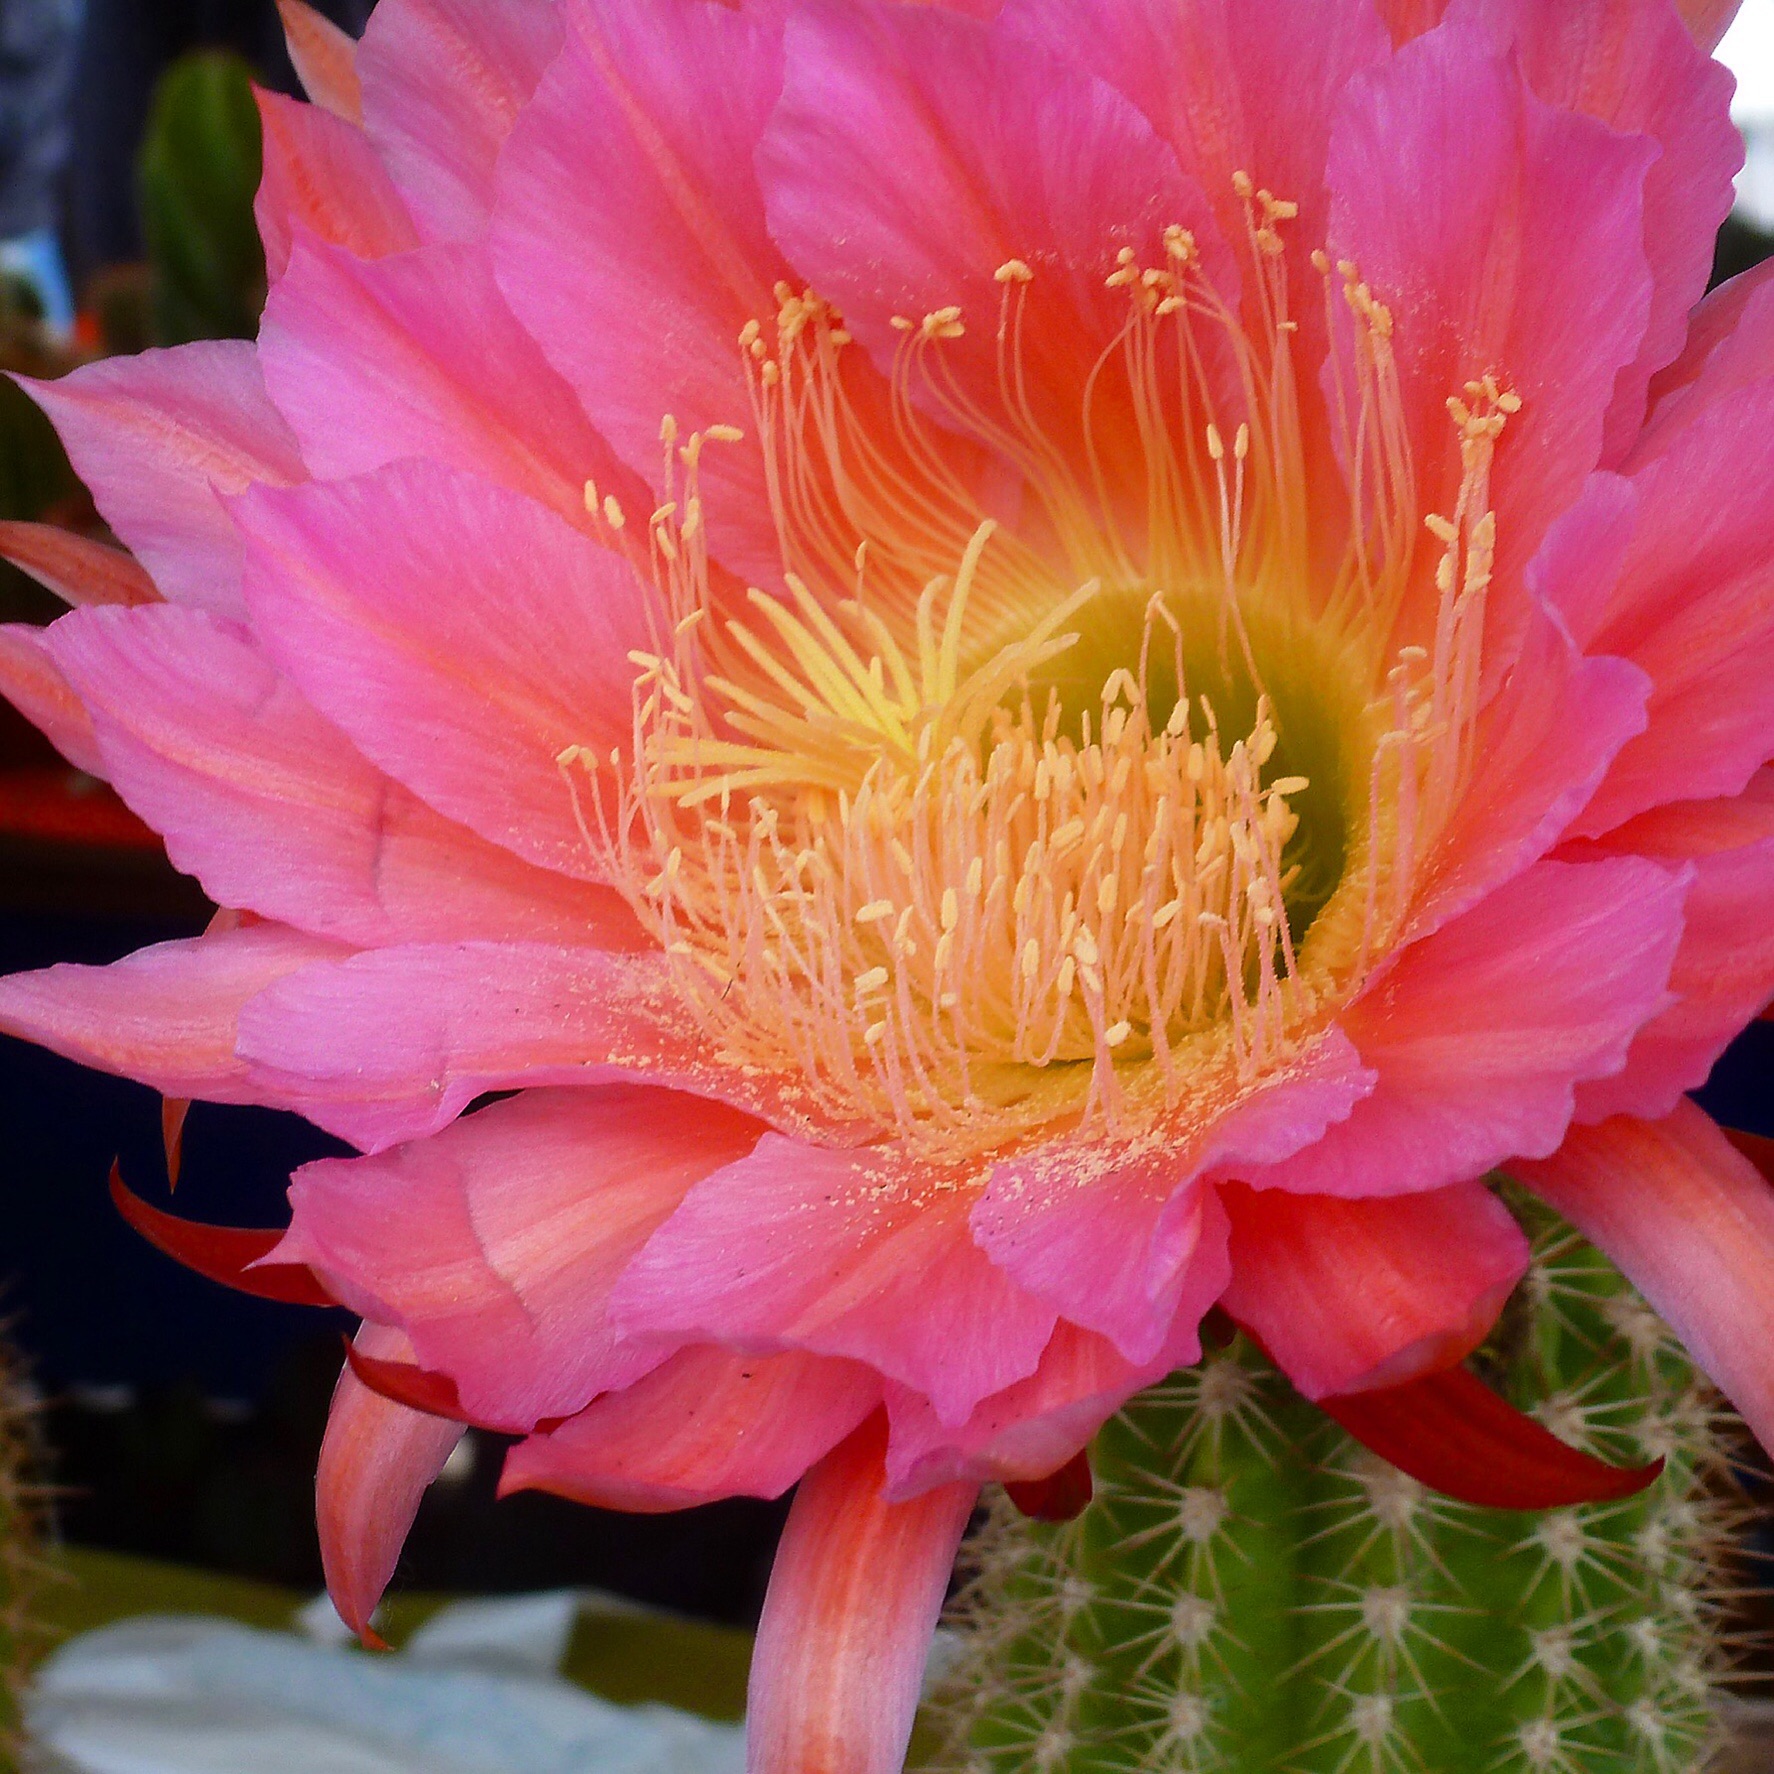 Flower of a succulent (cactus plant)....